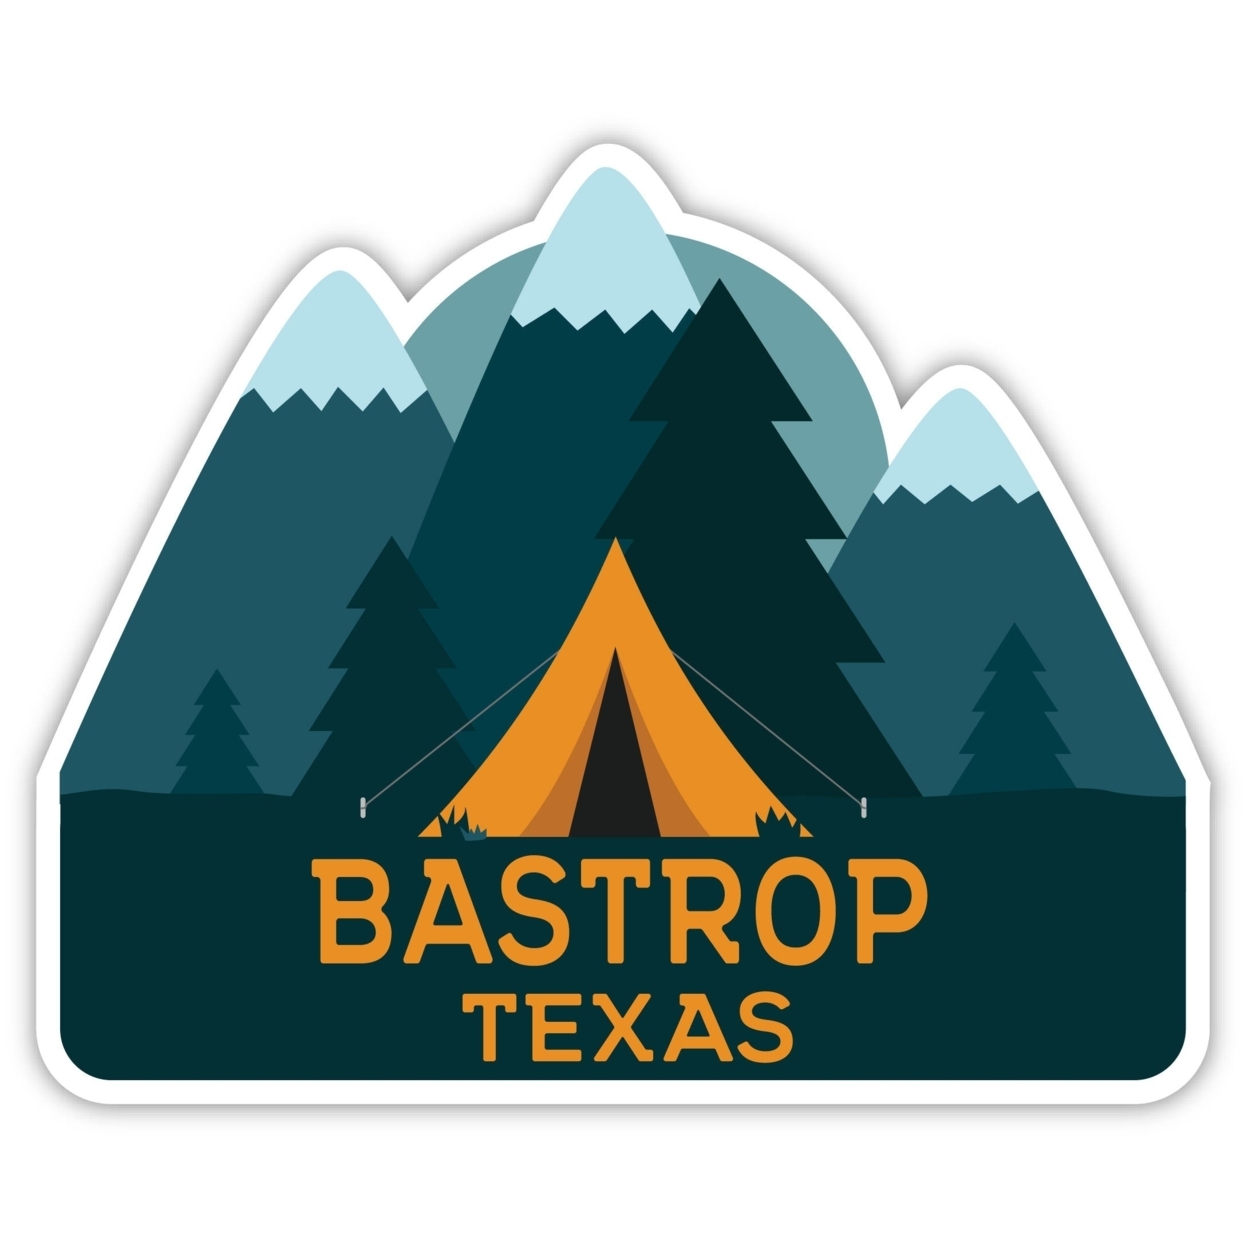 Bastrop Texas Souvenir Decorative Stickers (Choose Theme And Size) - Single Unit, 6-Inch, Tent